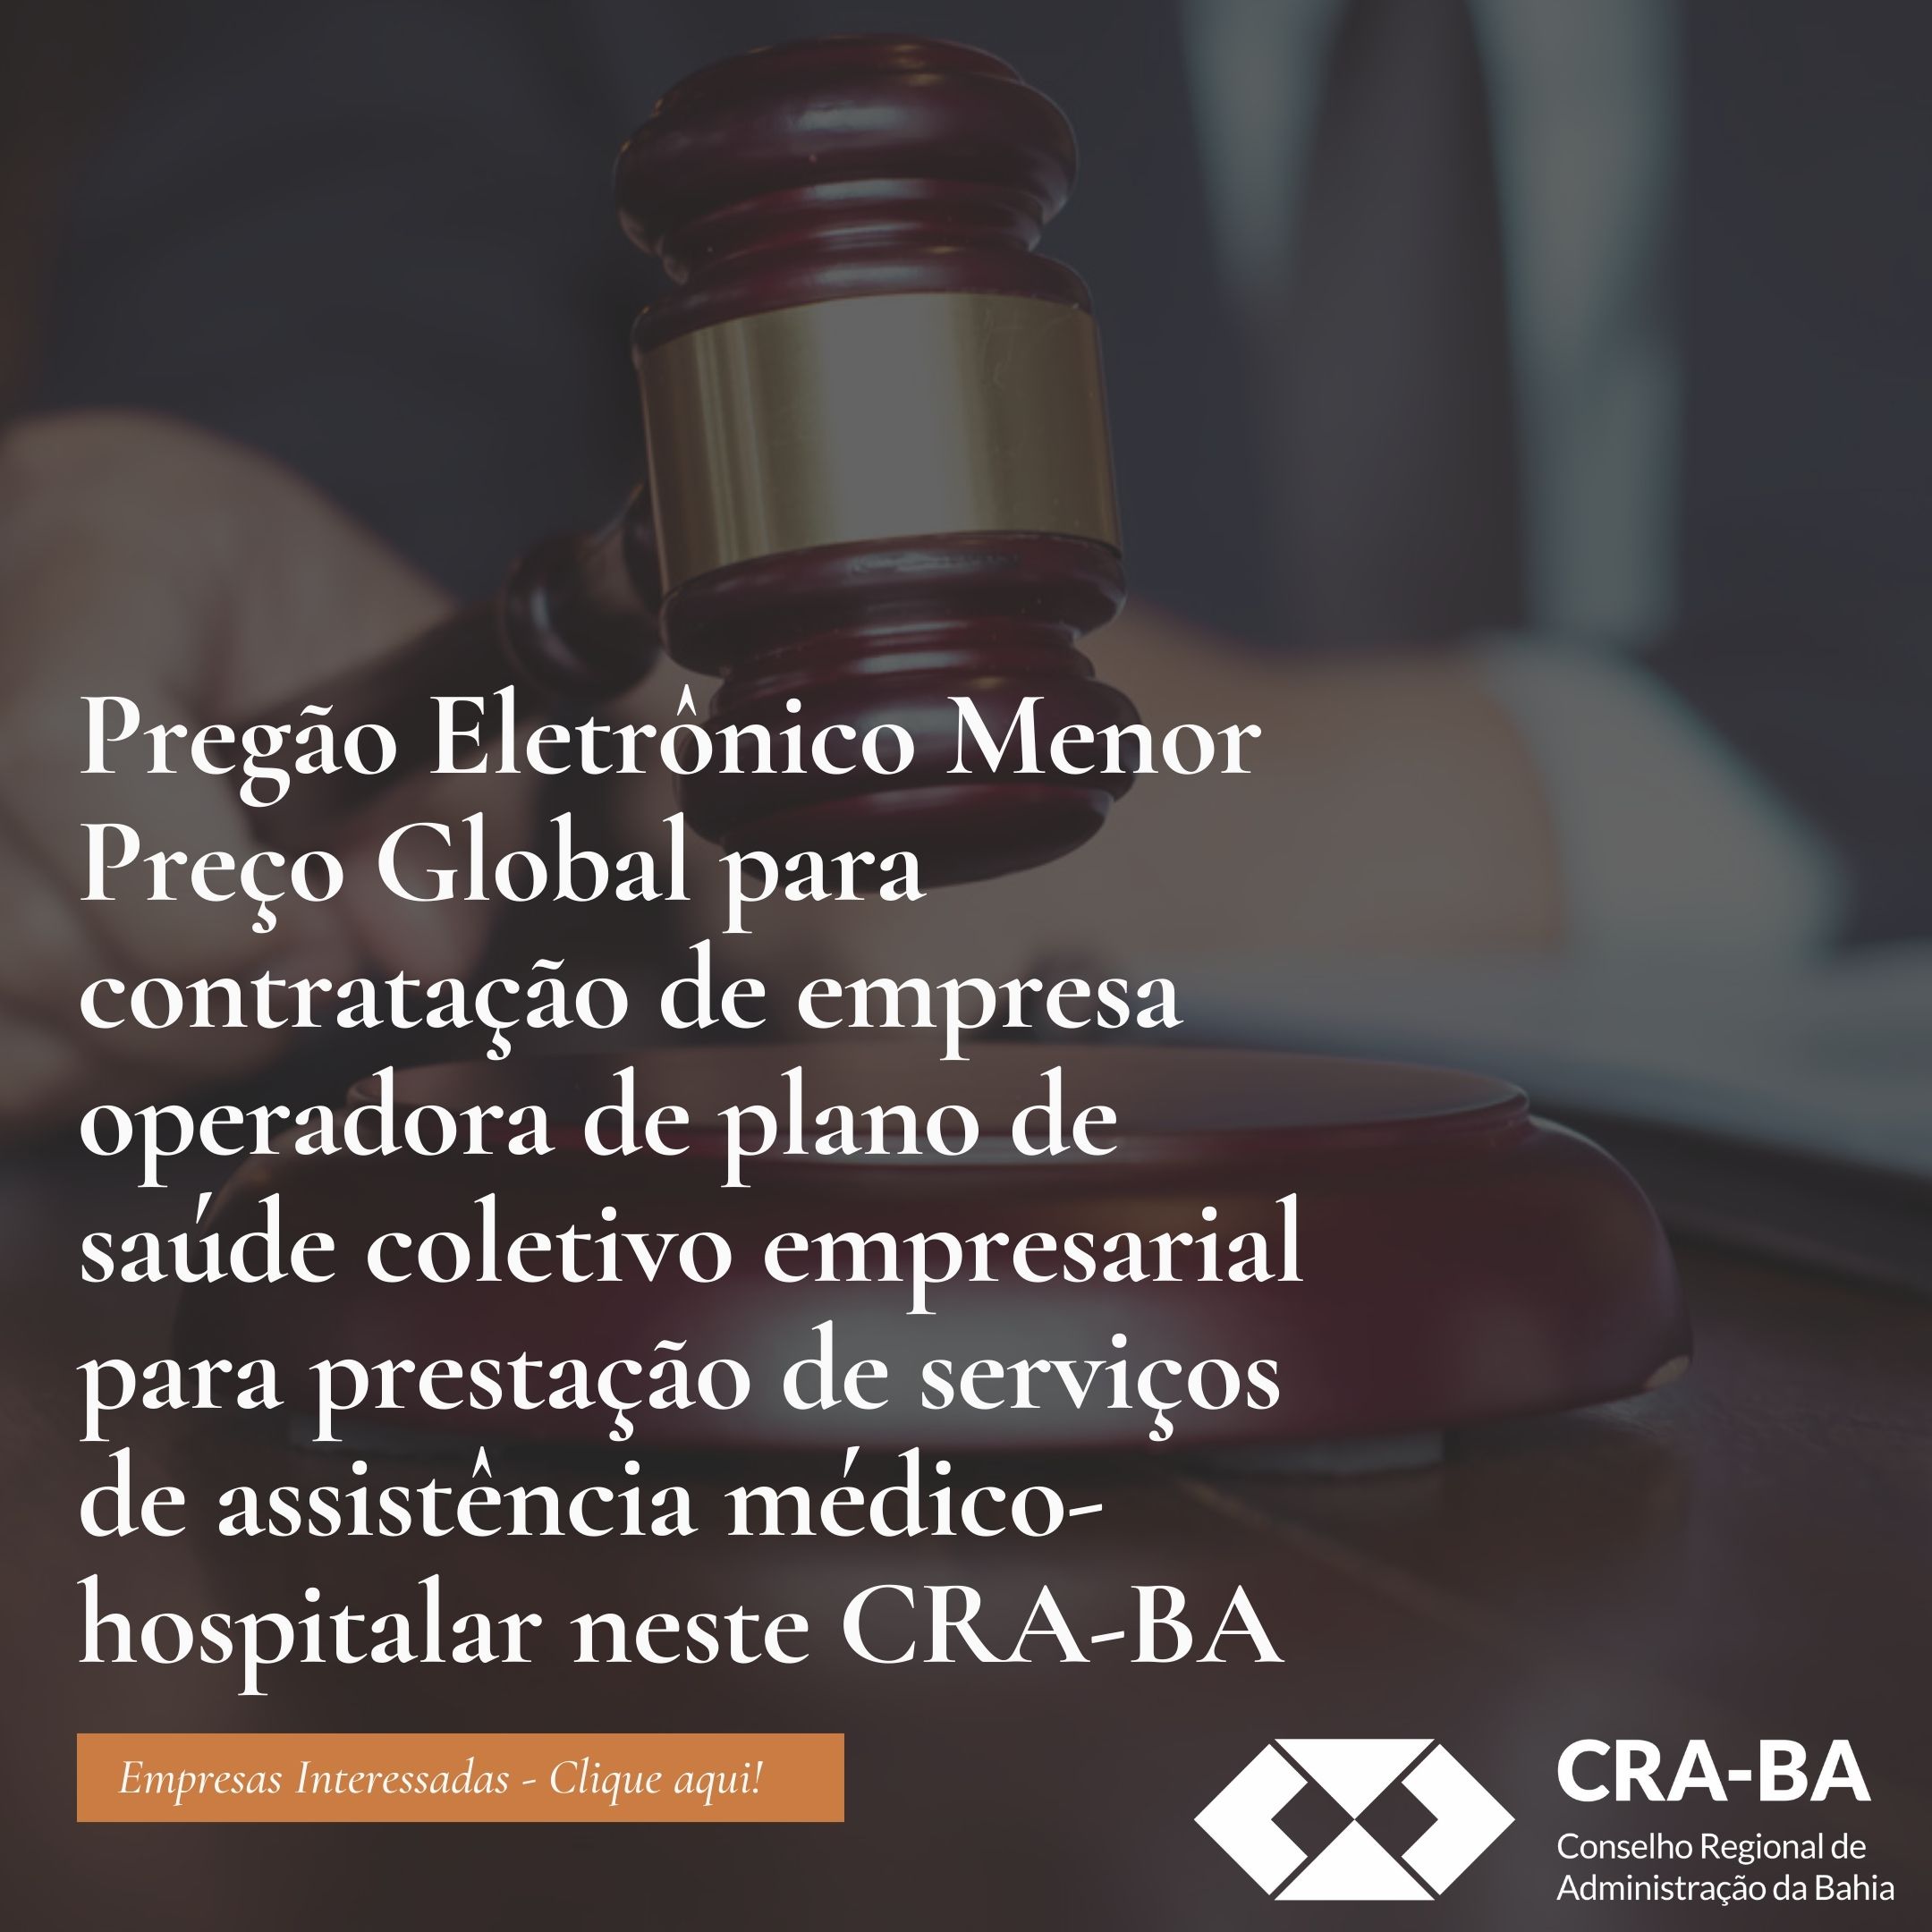 You are currently viewing Pregão Eletrônico CRA-BA 03/2022 – Contratação de Plano de Saúde Coletivo – Repetição